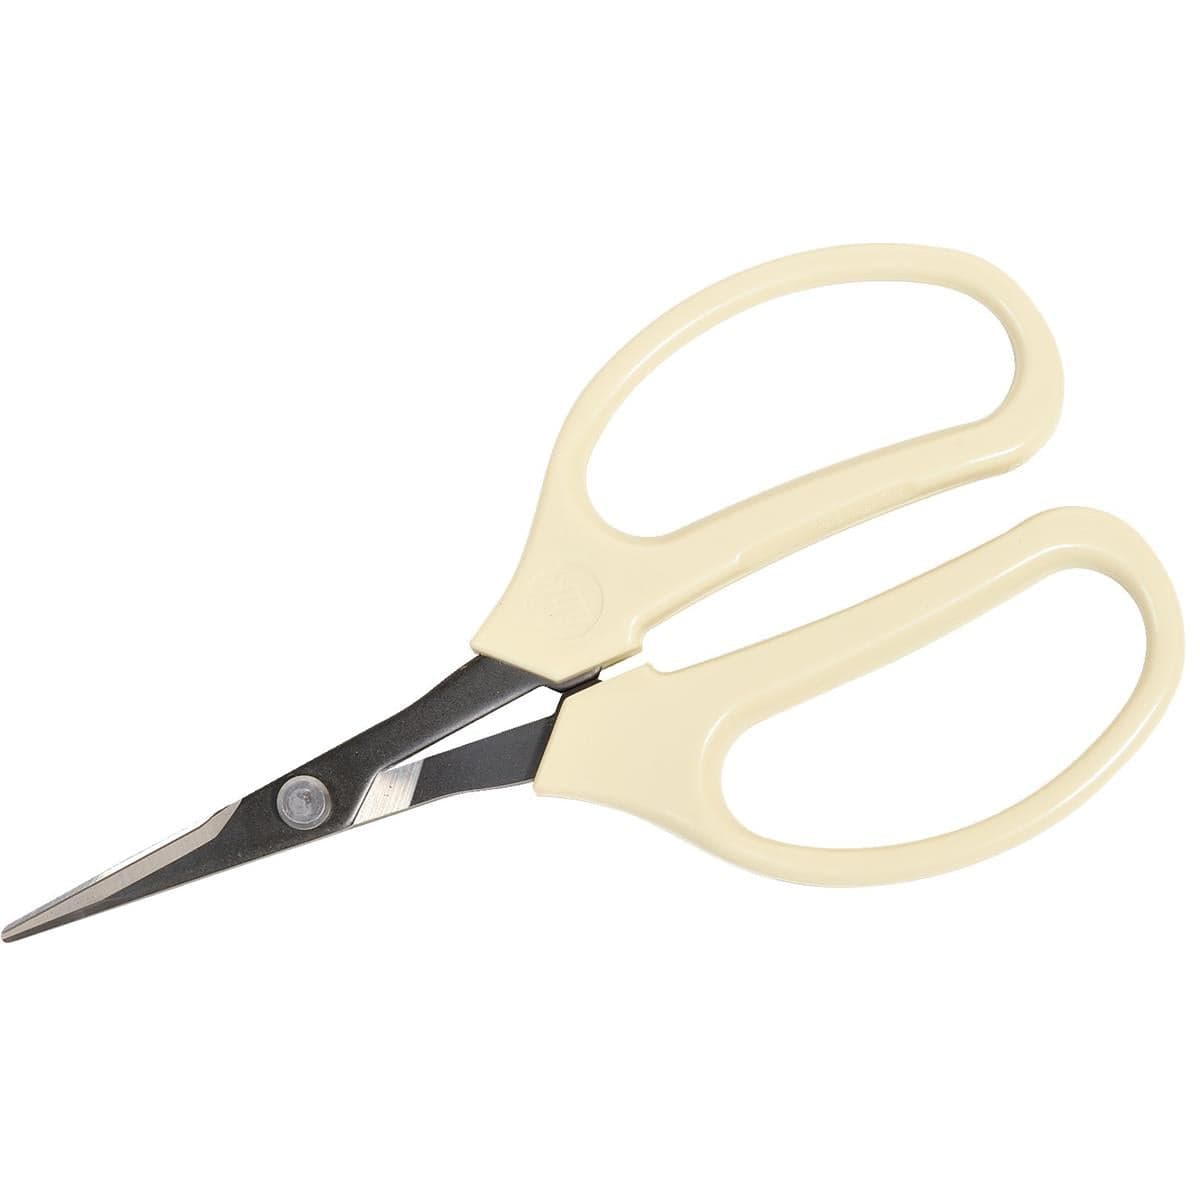 ARS All-Purpose Scissors